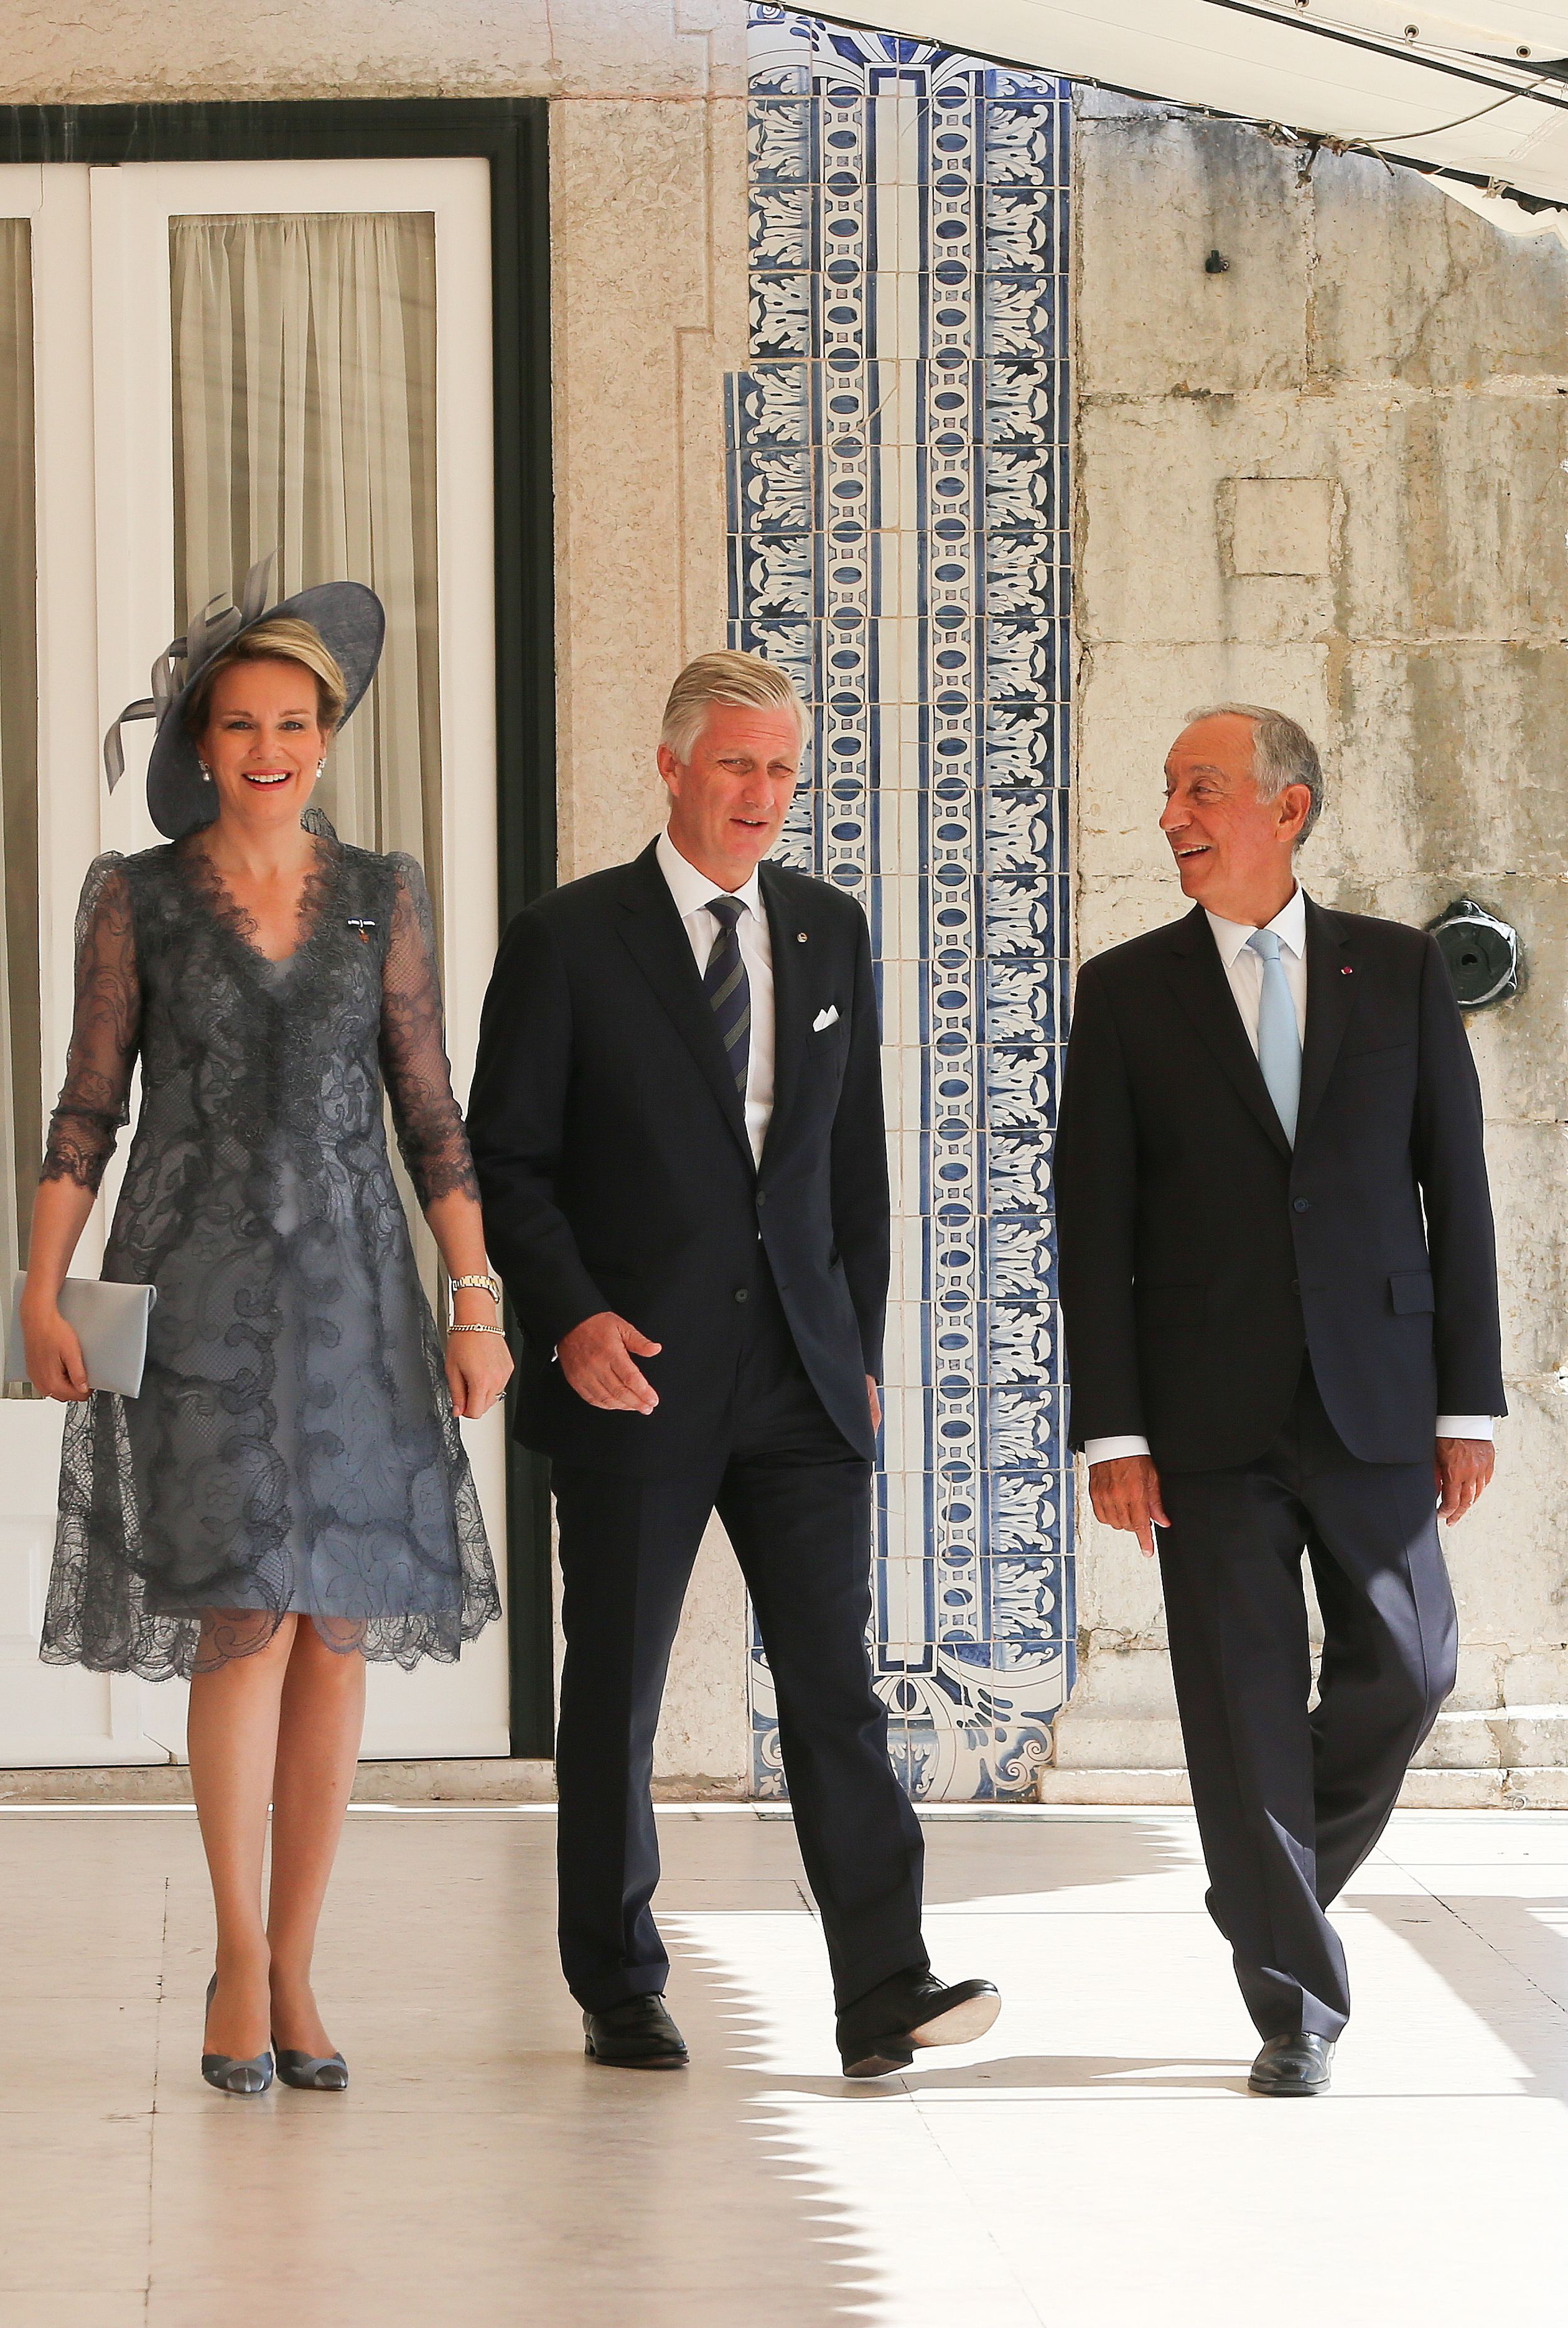 Koningspaar_Belgie_ontvangst_residentie_Portugal.jpg